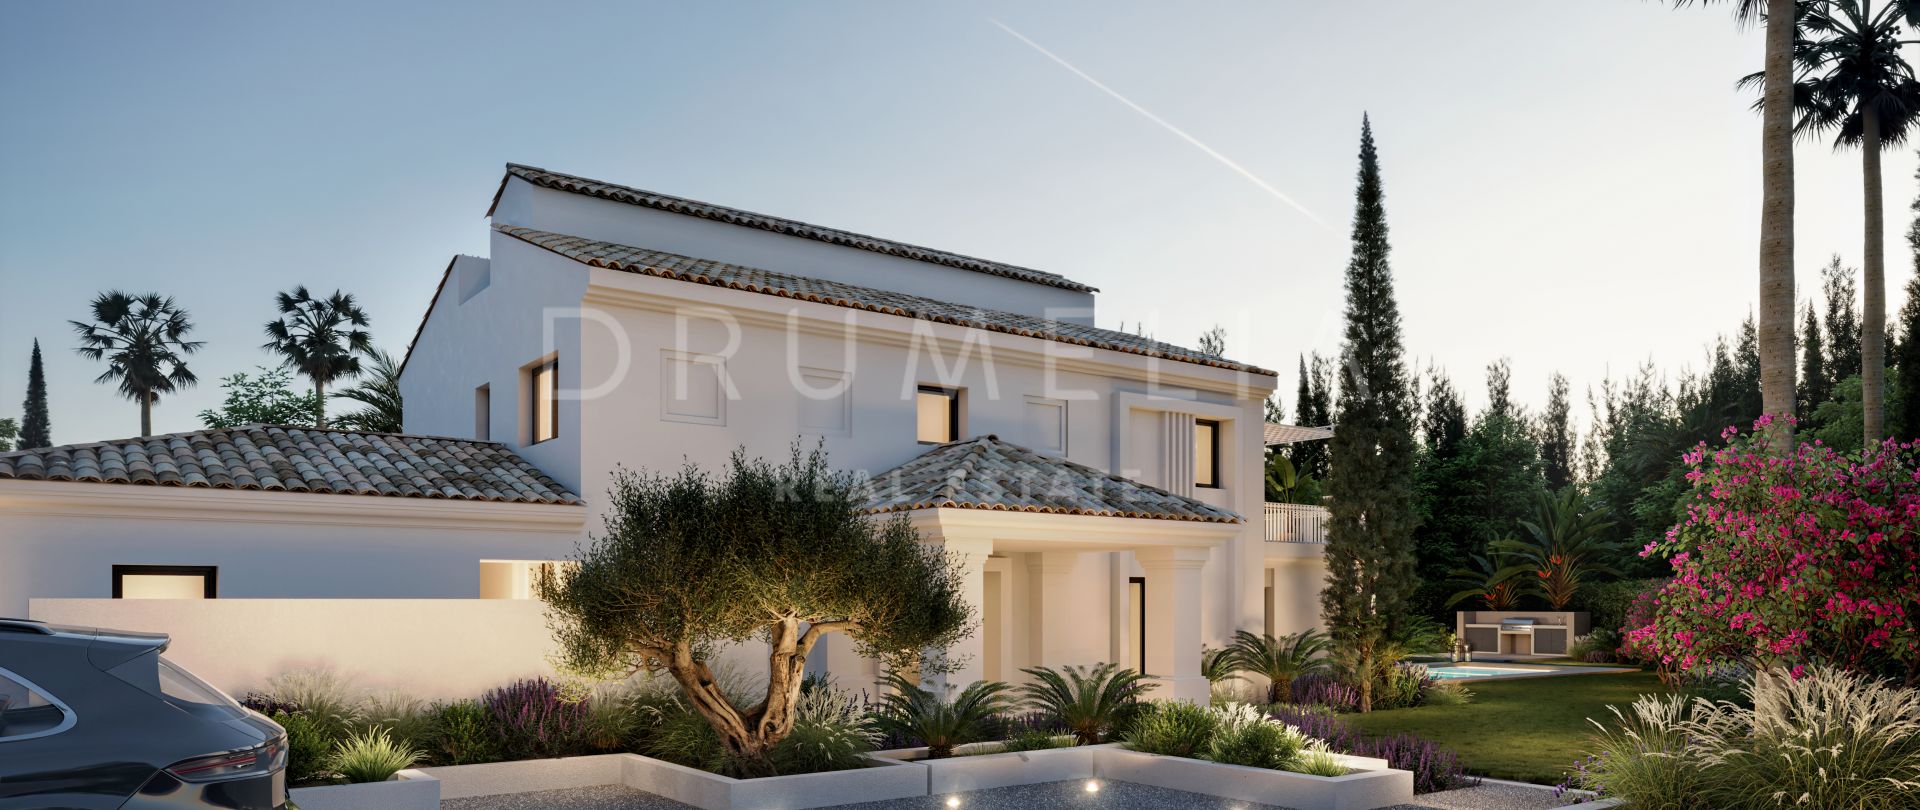 Pas gerenoveerd modern huis voor luxe mediterrane levensstijl in Nueva Andalucia